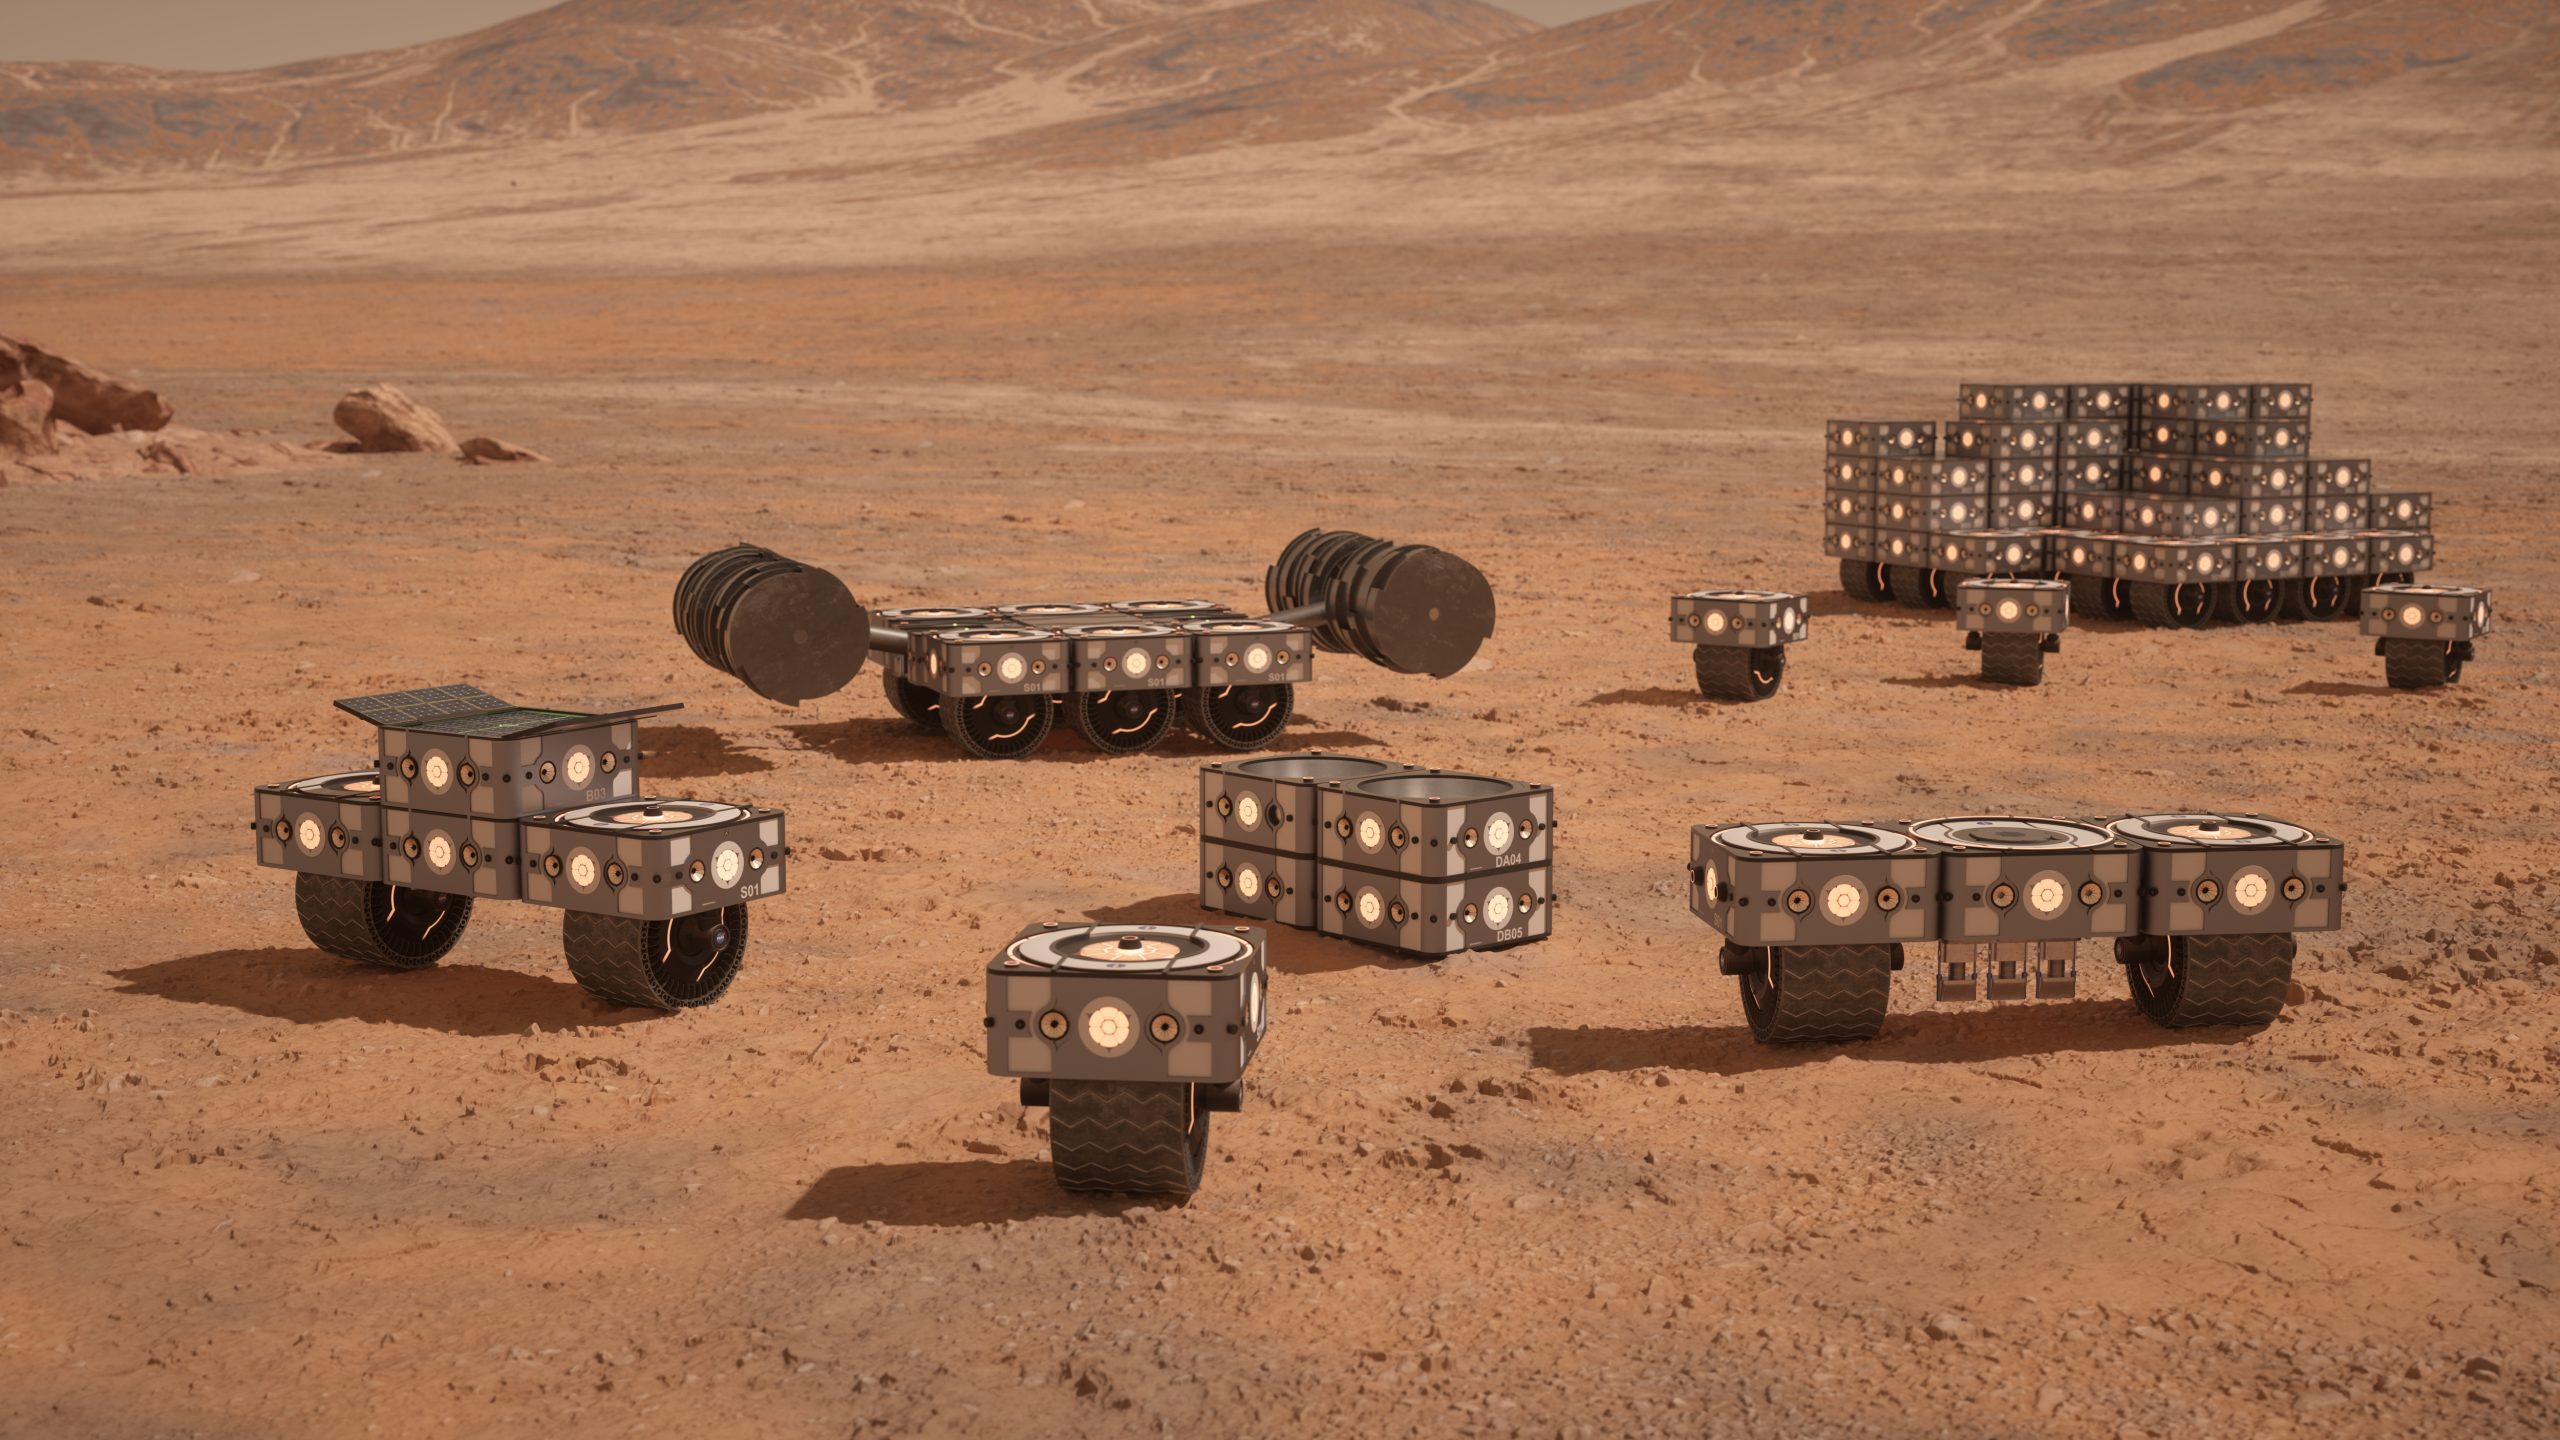 Hassell's Mars Settlement